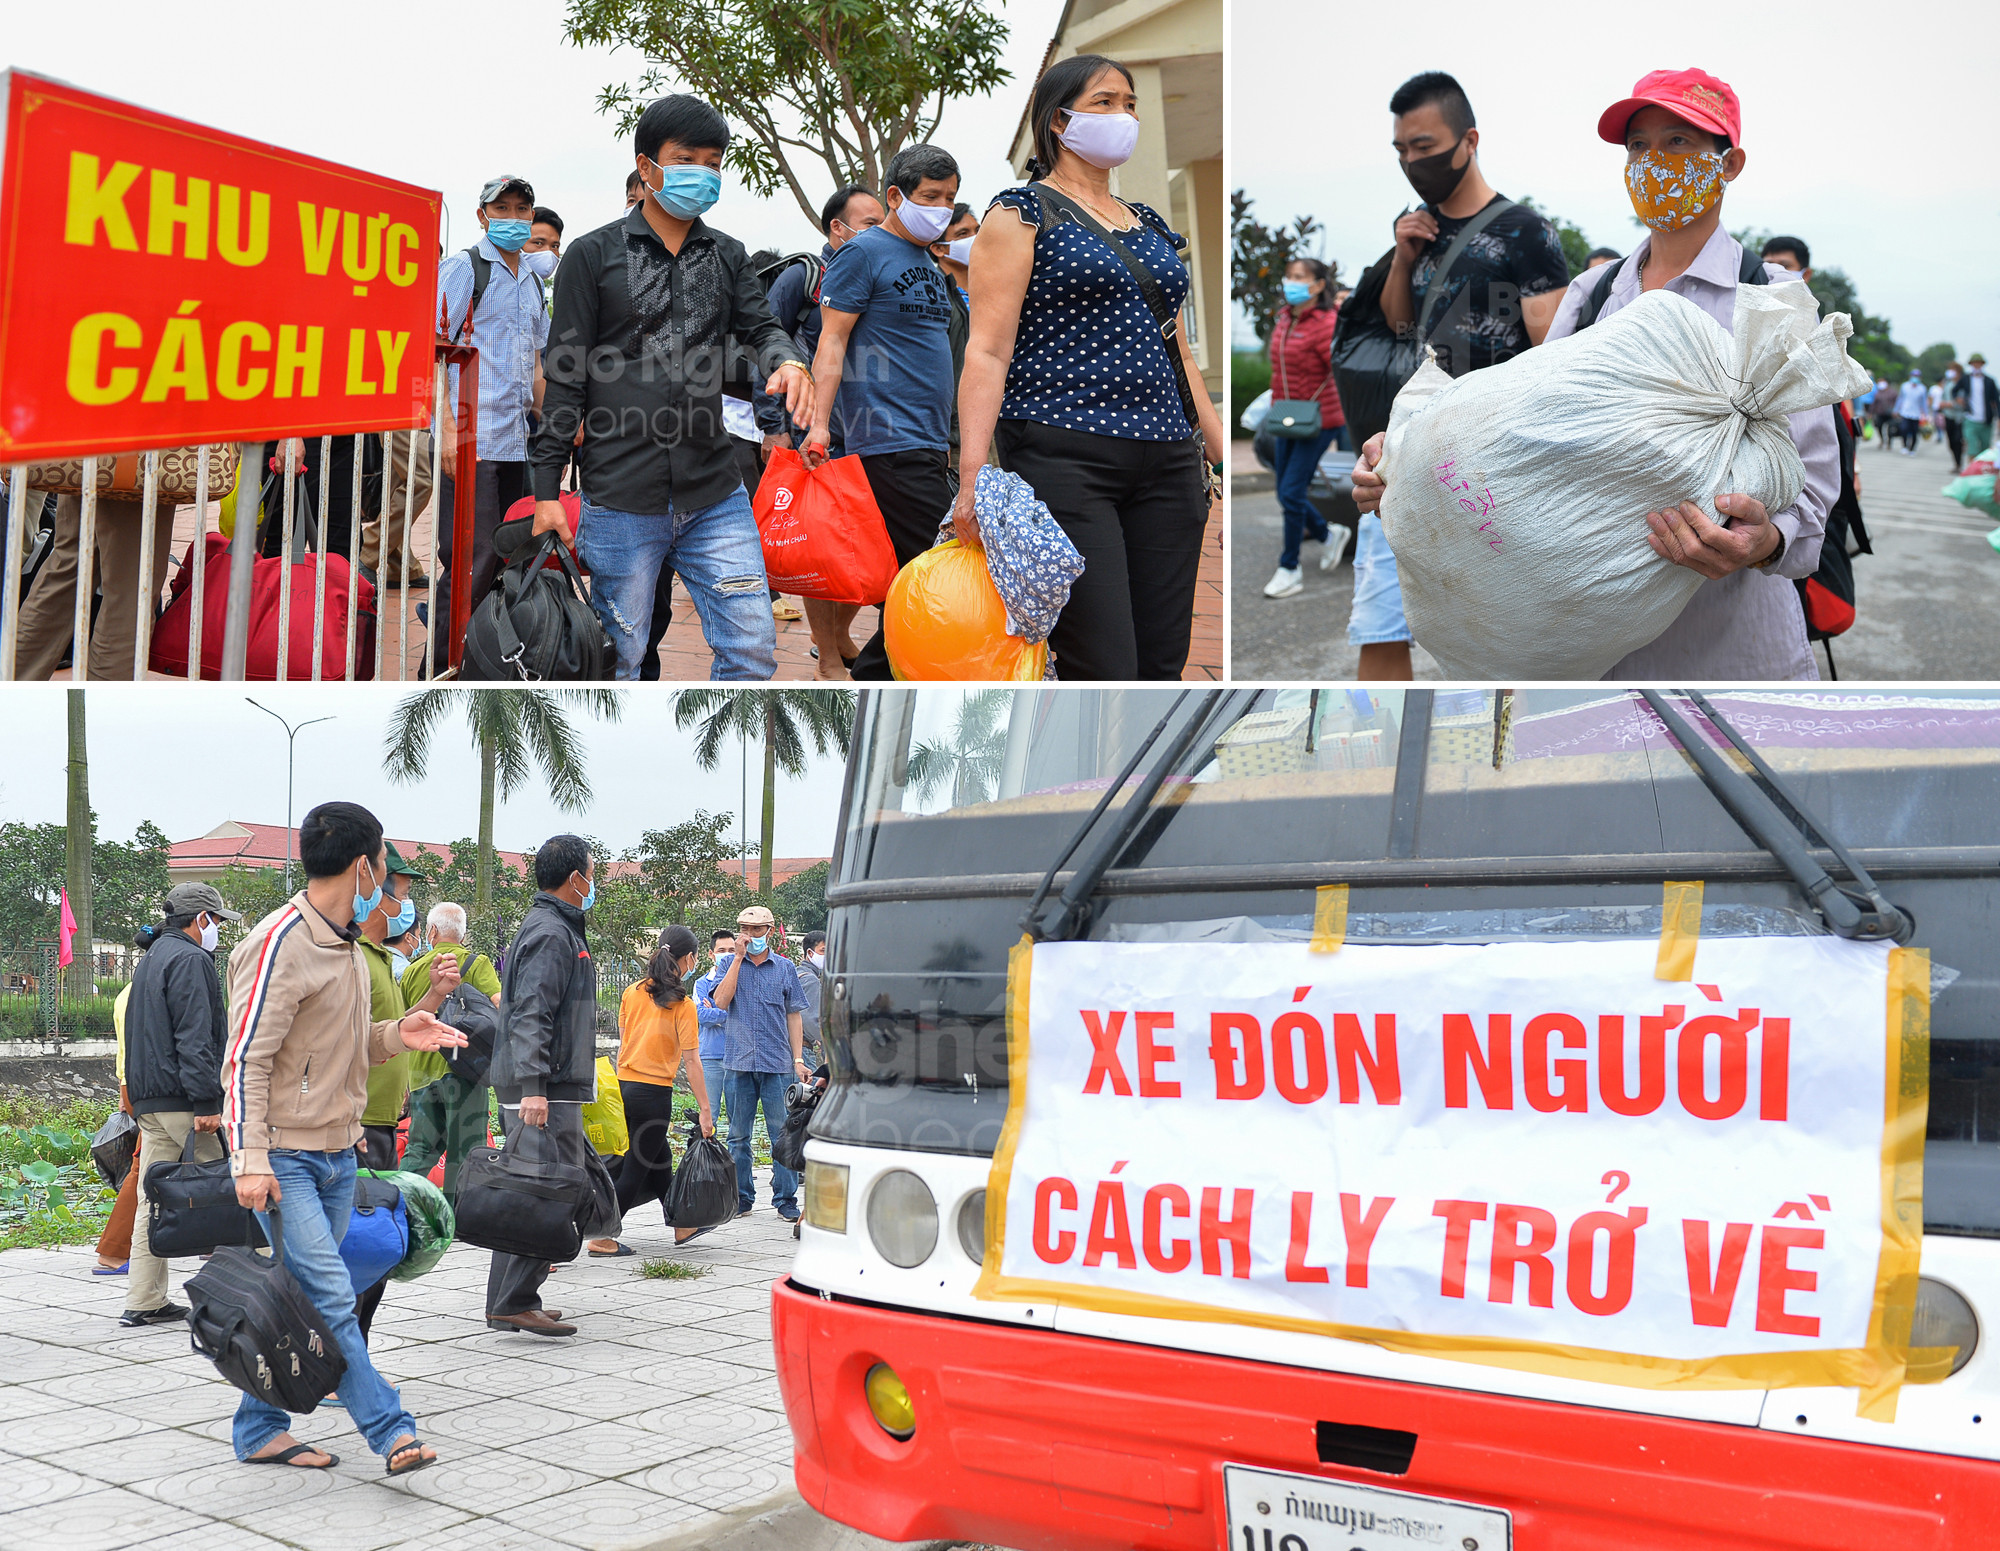 Đúng 9 giờ sáng, 135 công dân chính thức rời khu cách ly trở về địa phương trên các phương tiện do tỉnh Nghệ An bố trí.  12. Các chuyến xe này sẽ đưa 135 công dân này về tới trung tâm các tỉnh, thành phố, huyện, thị (quê hương) của họ.